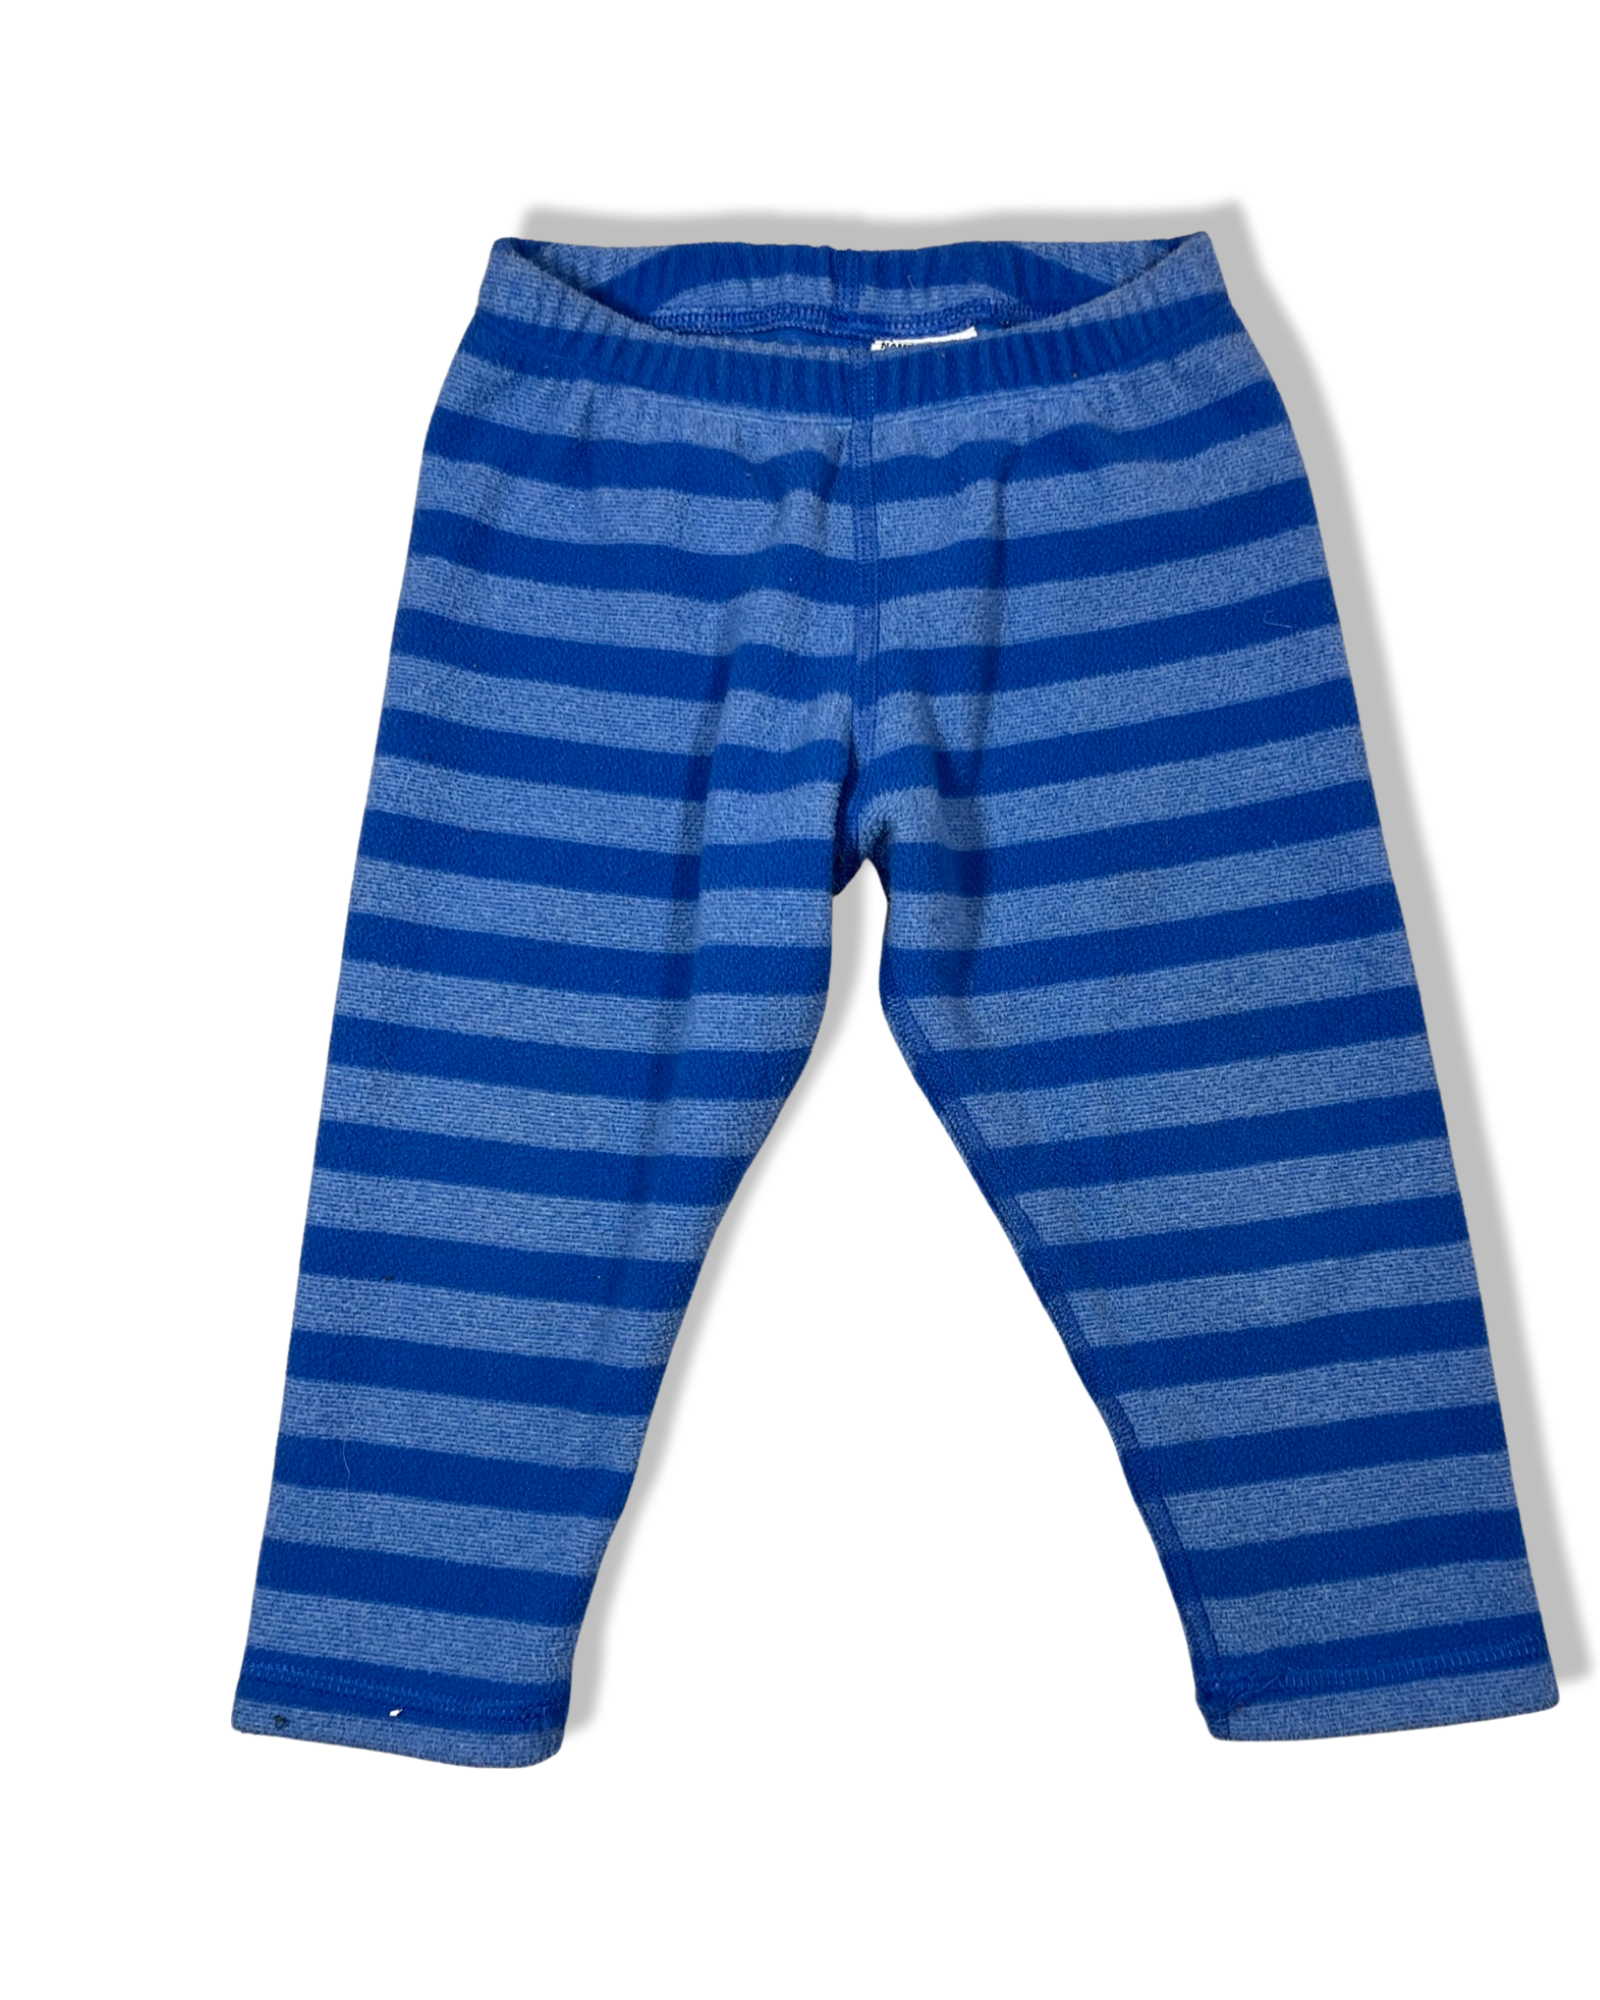 MEC Cozy Blue Pants (12M)